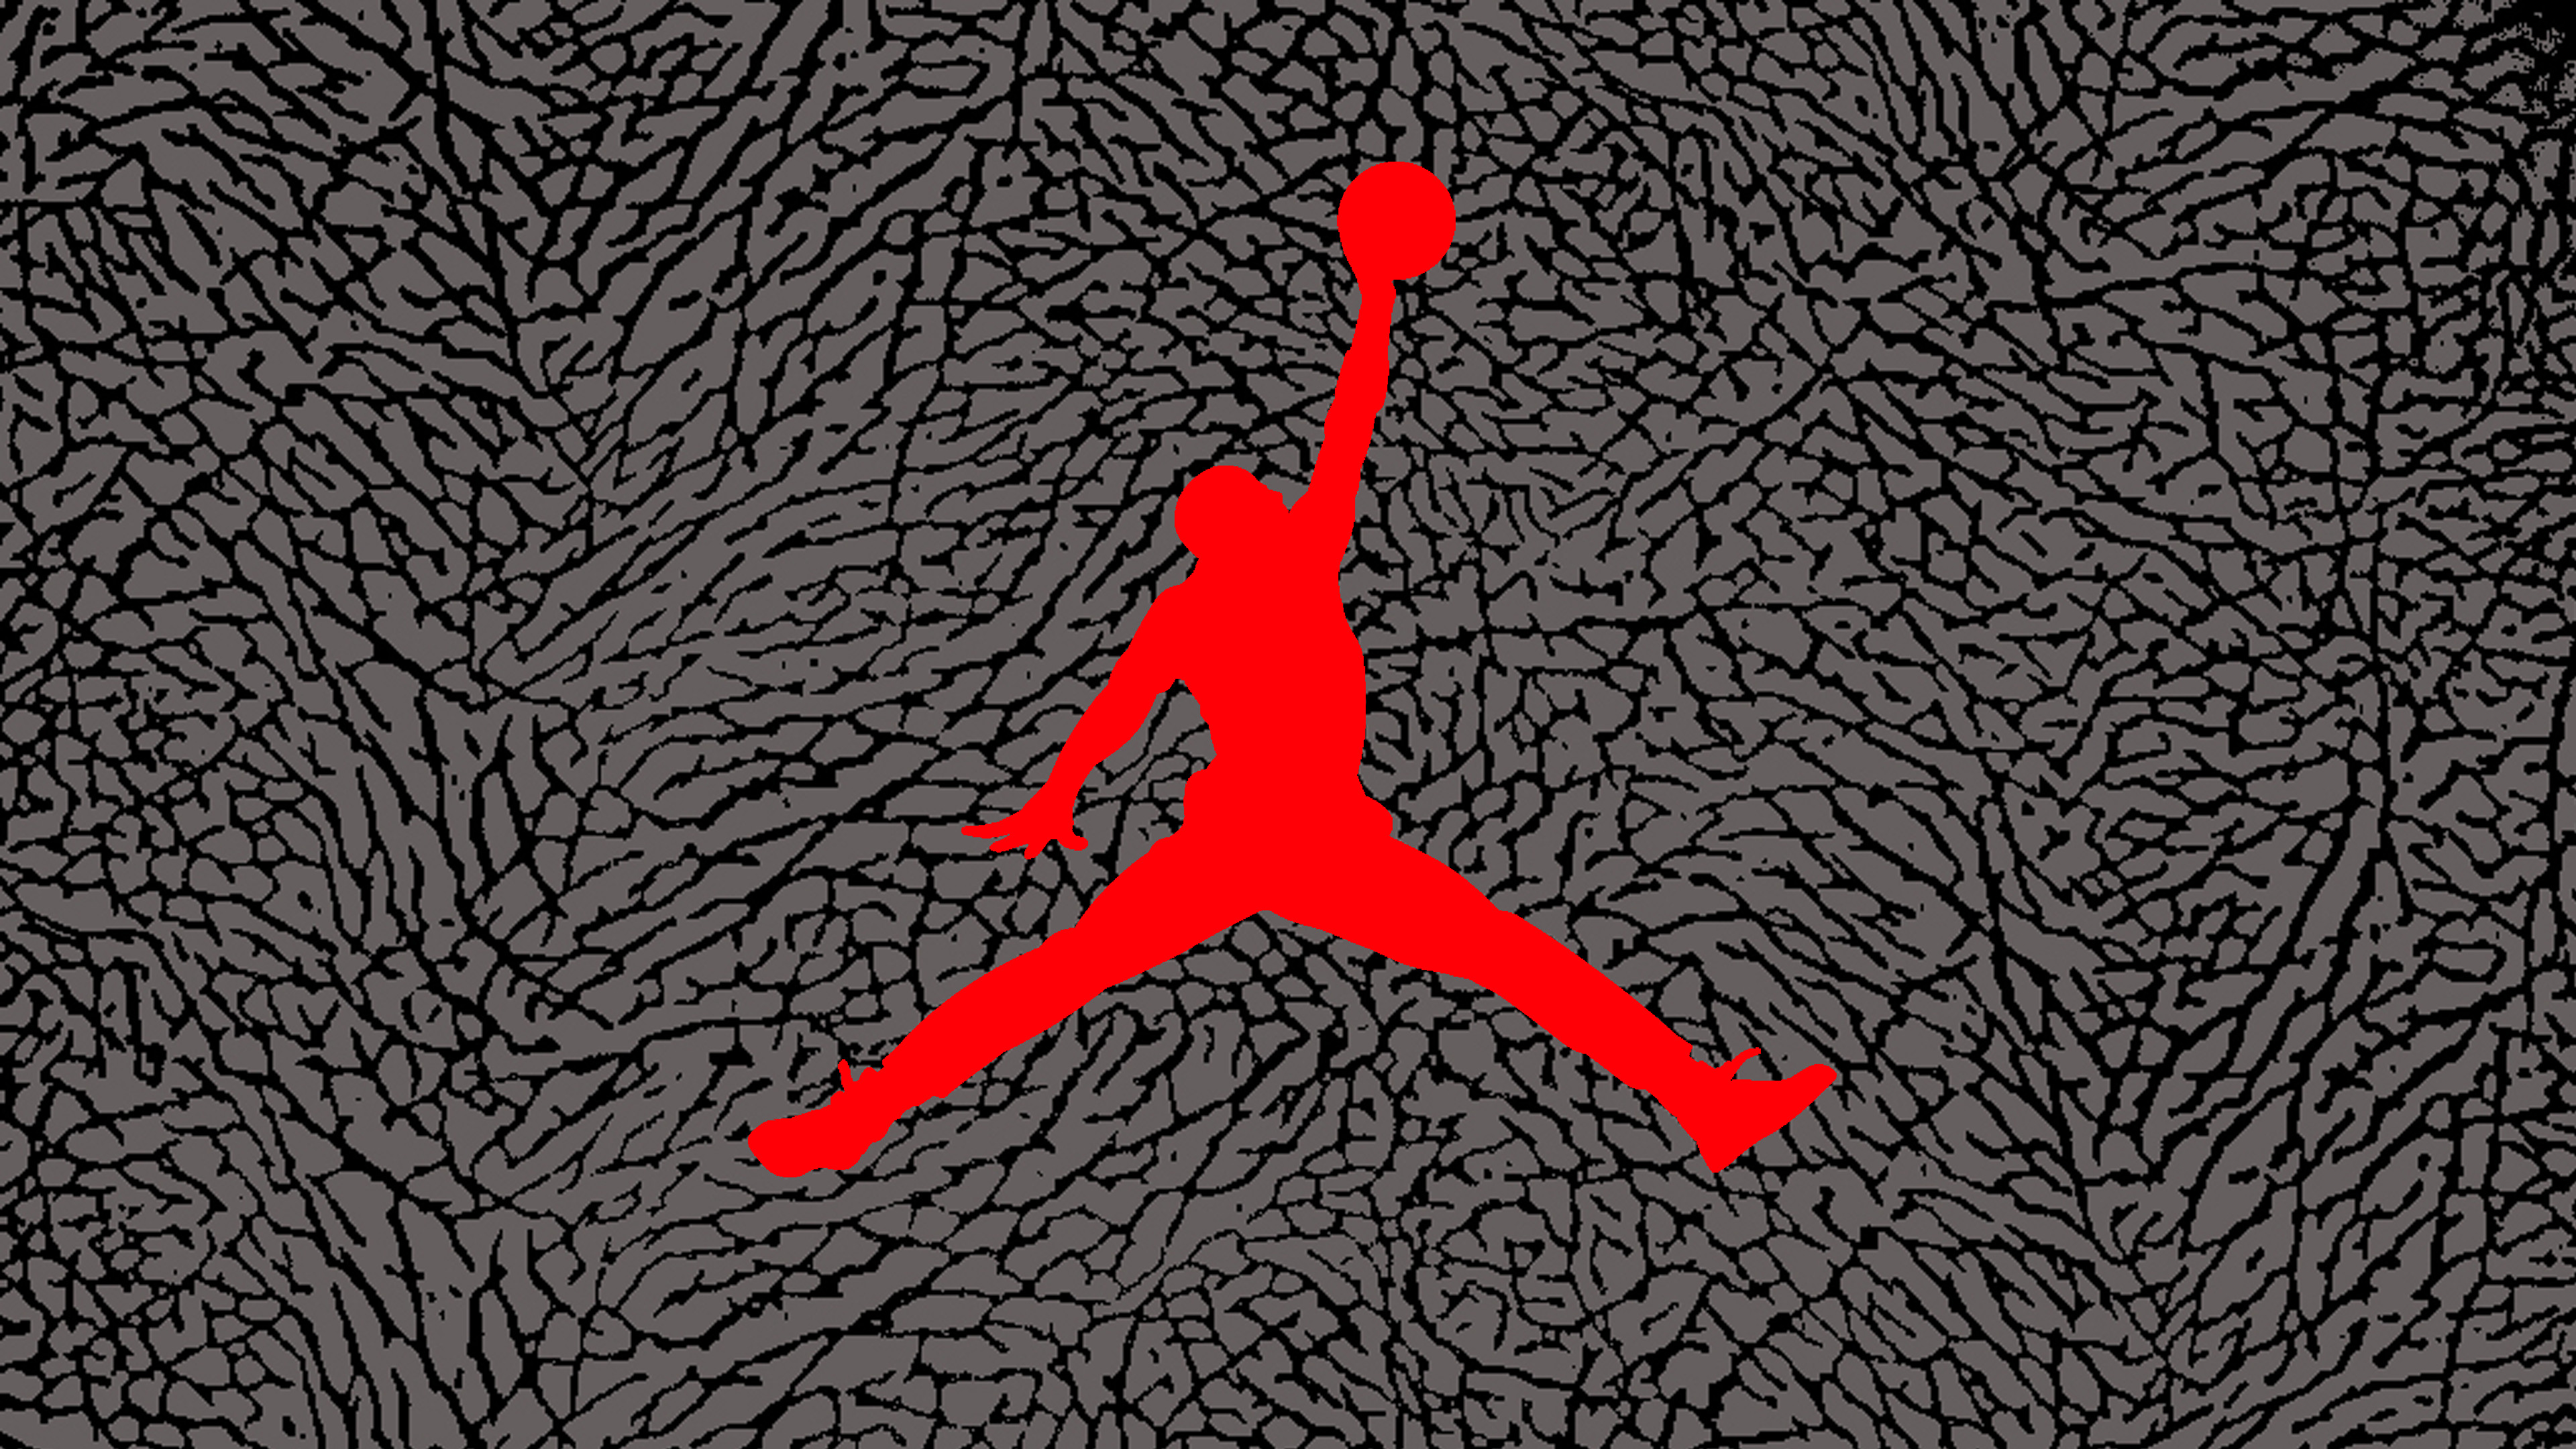 Michael Jordan Wallpaper (84+ pictures)